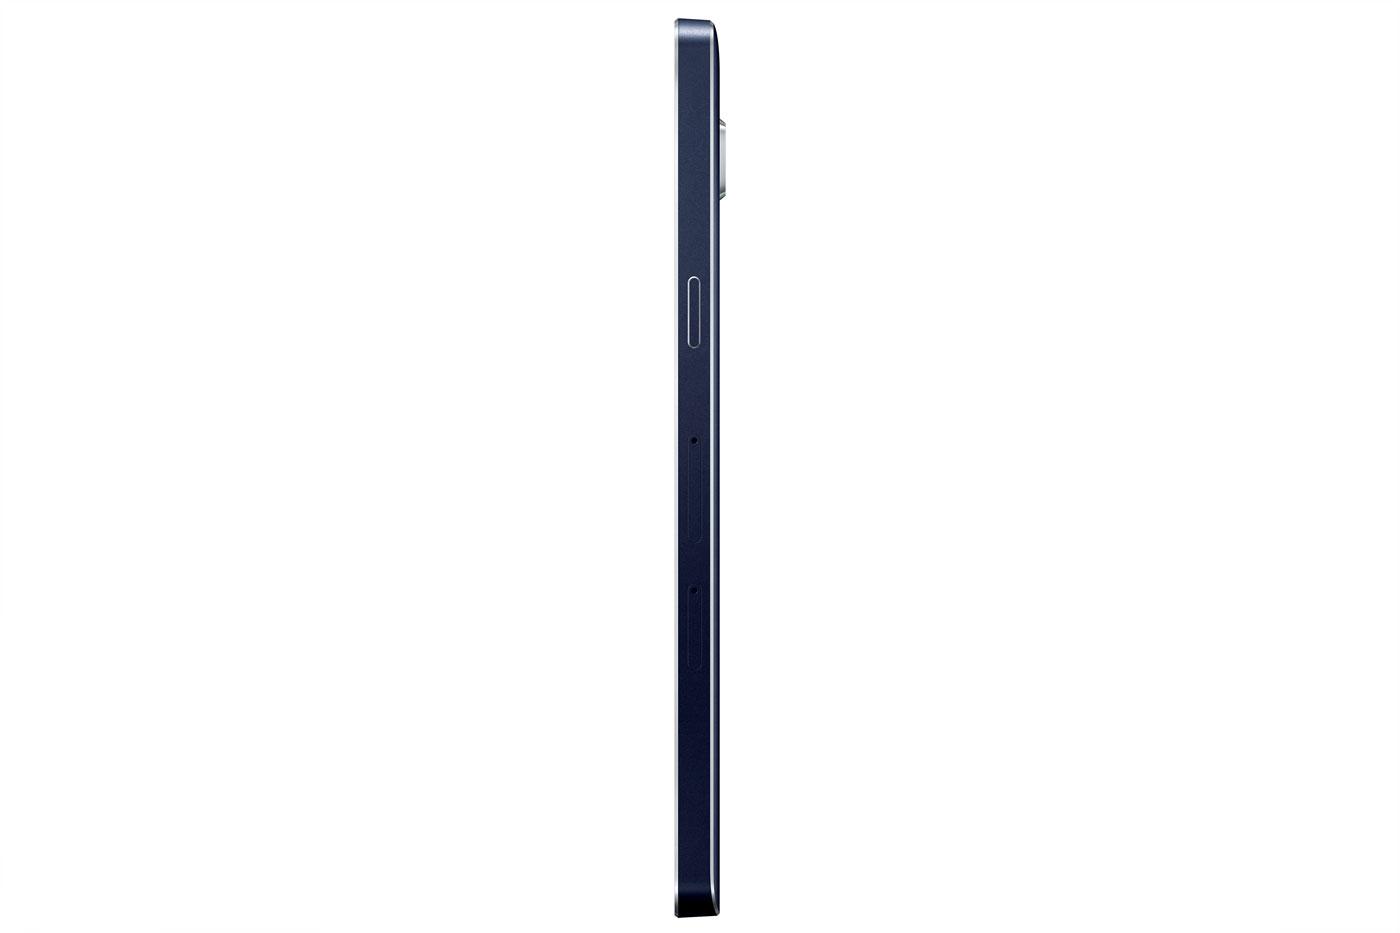 Samsung Galaxy A5 en color negro visto de perfil